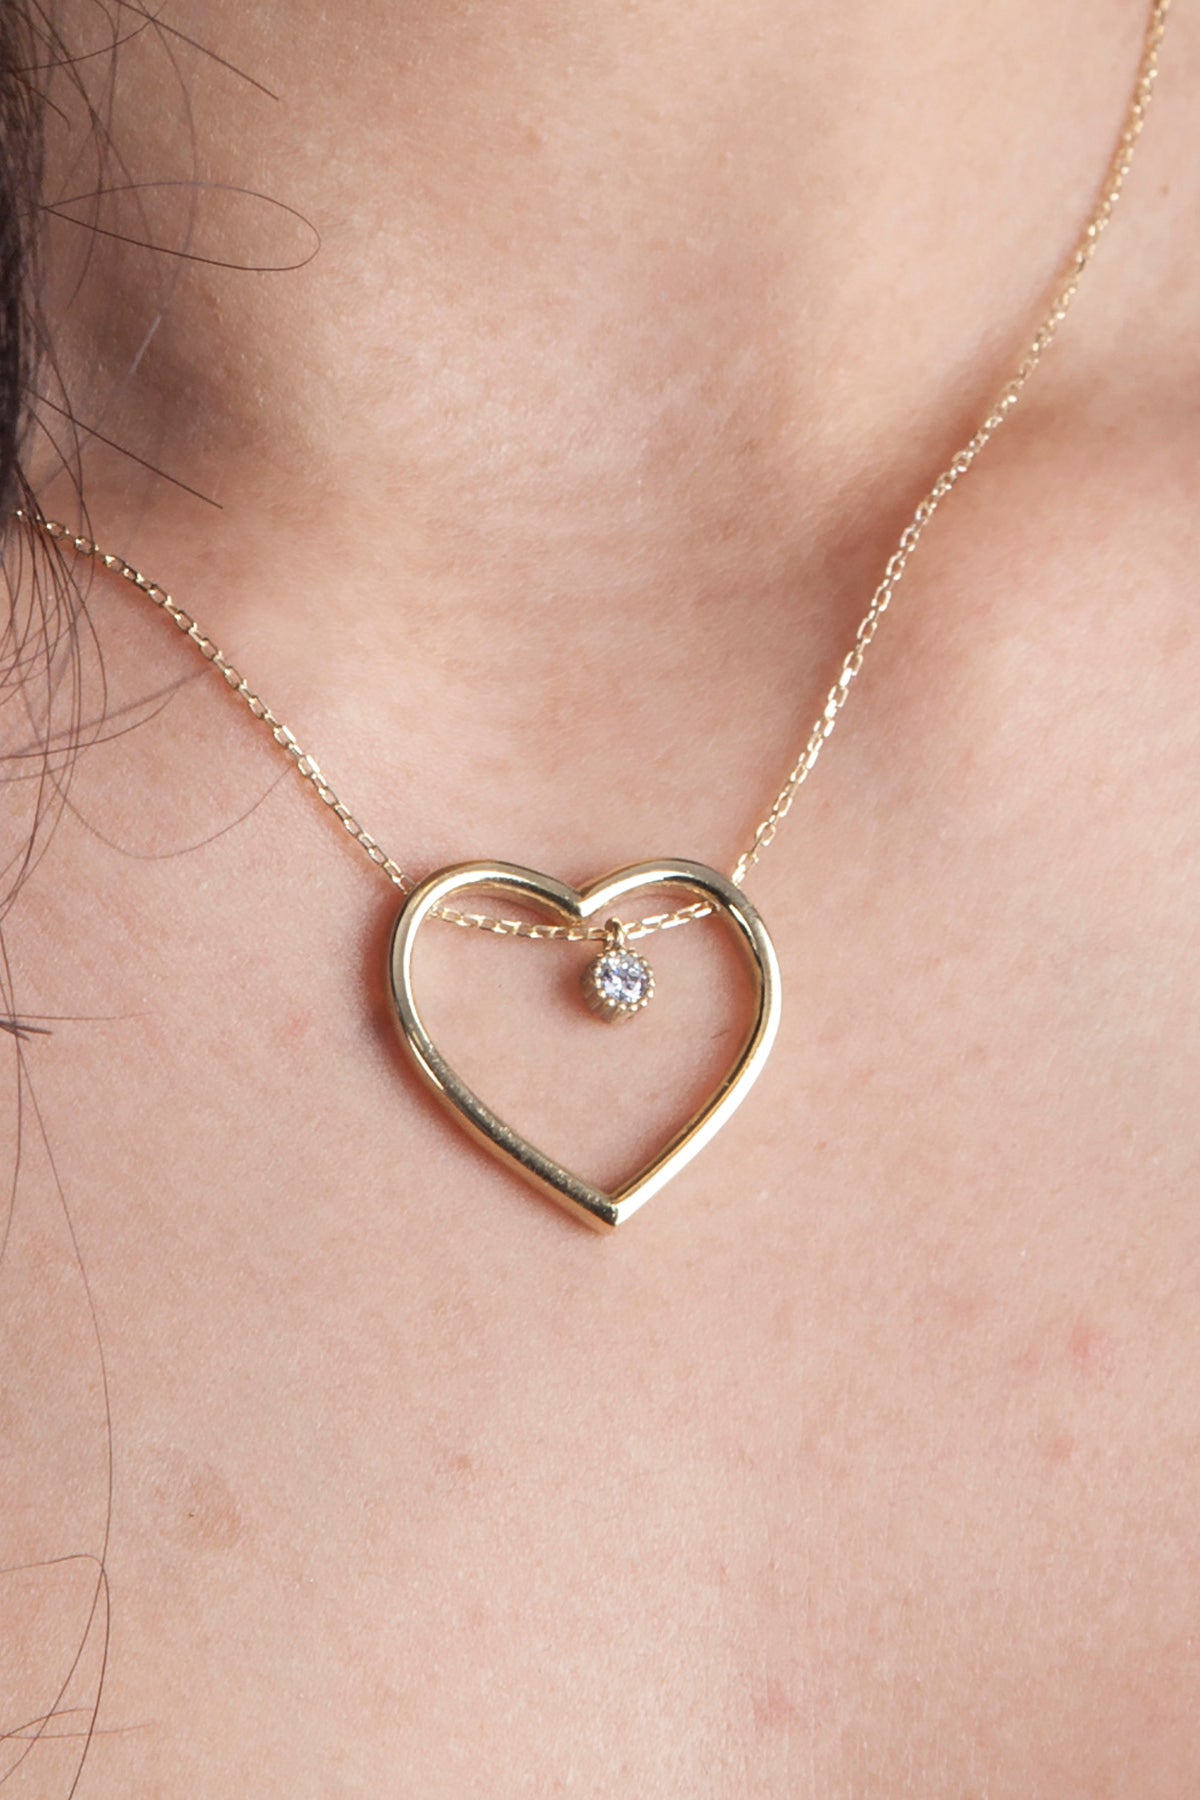 Silber Halskette mit Herz-Anhänger in silber oder gold mit Zirkonium-Steinchen